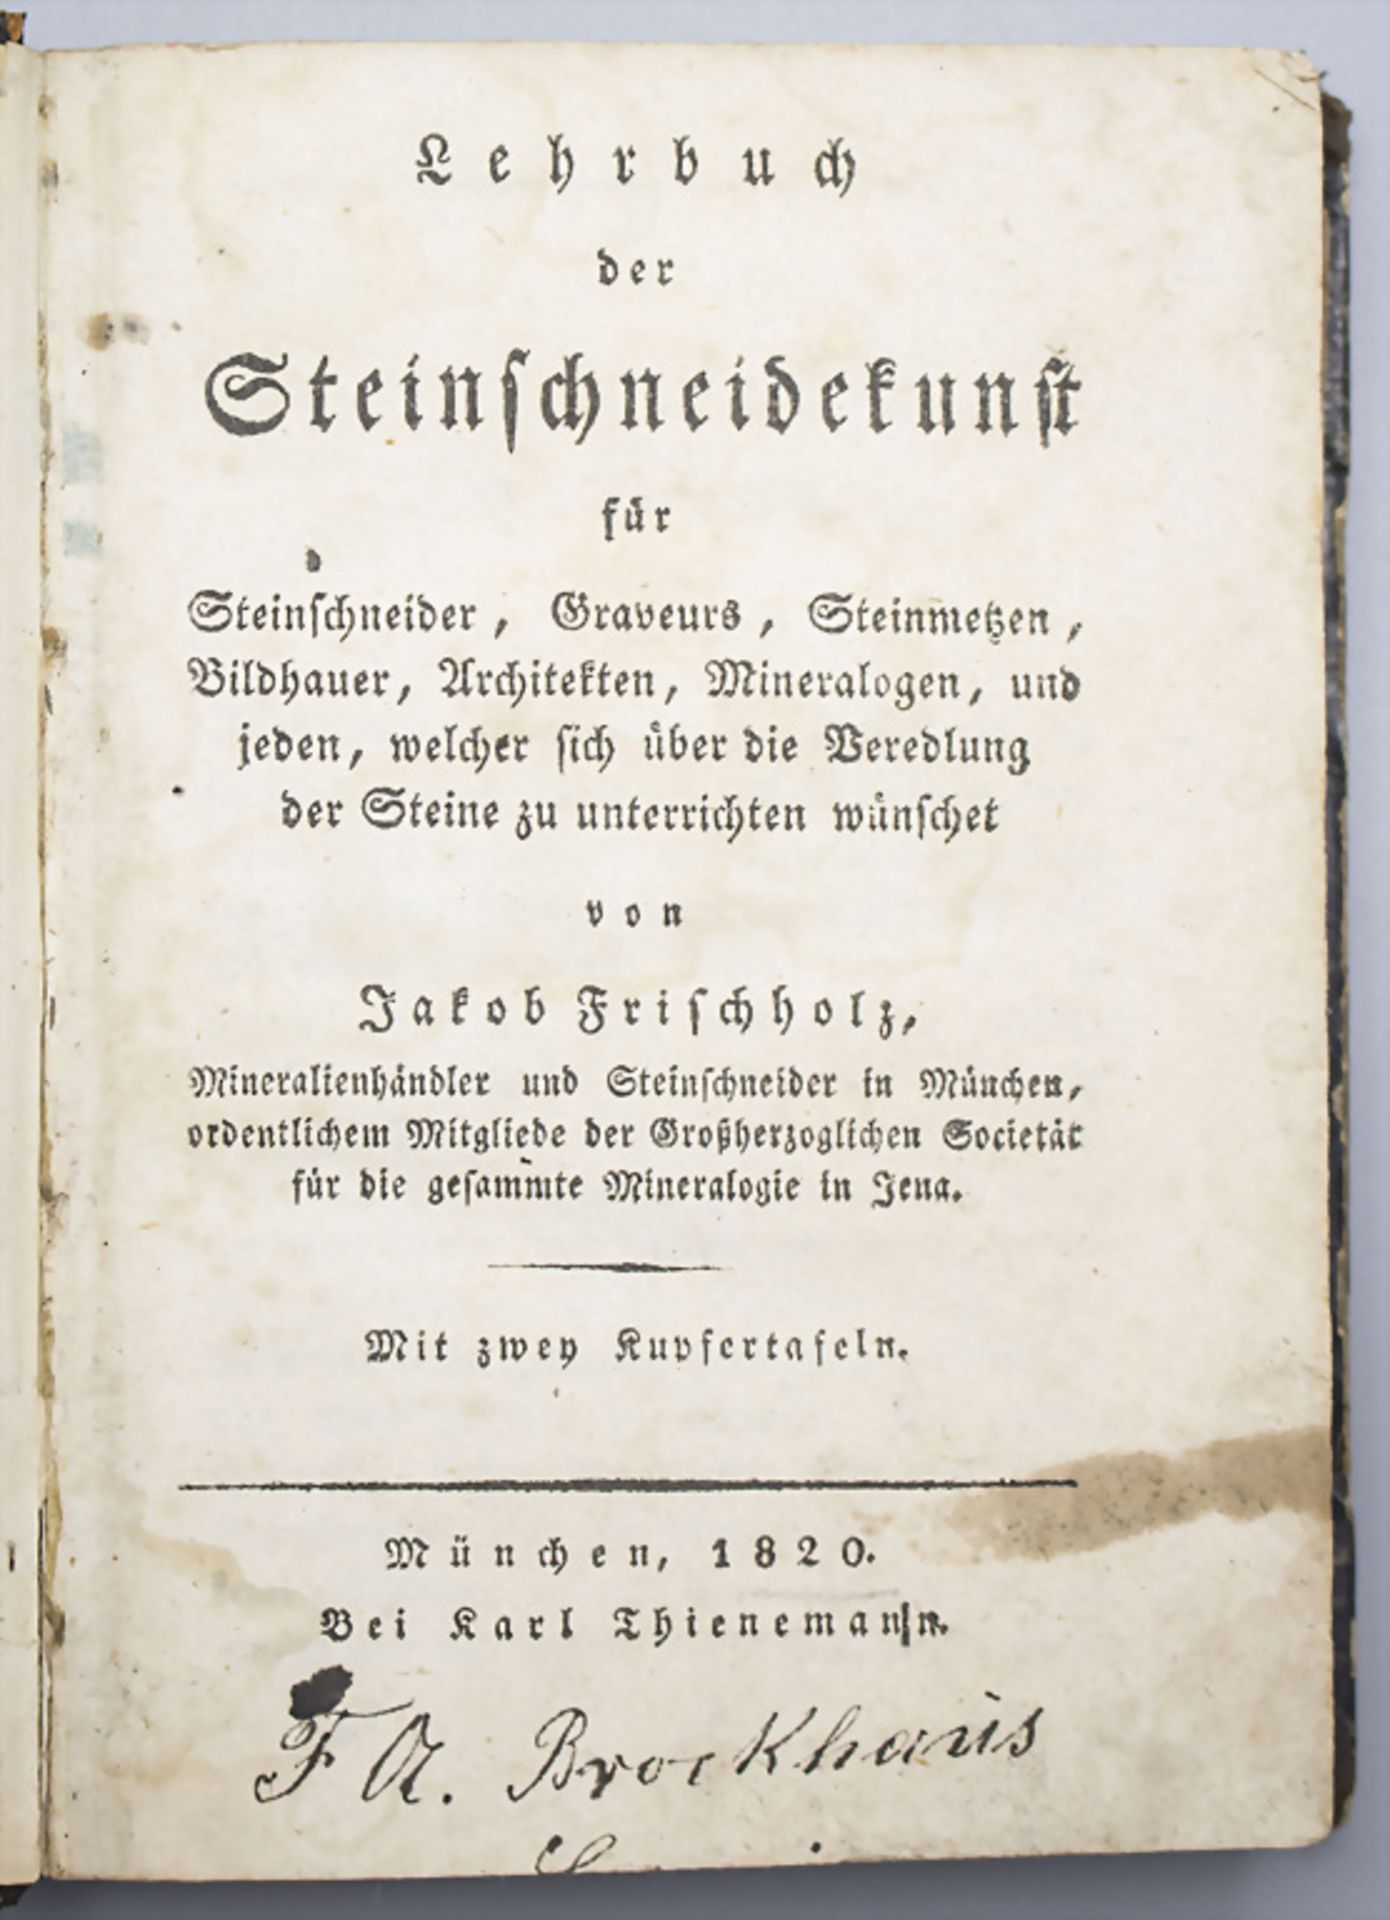 Jakob Frischholz, 'Lehrbuch der Schneidekunst', München, 1820